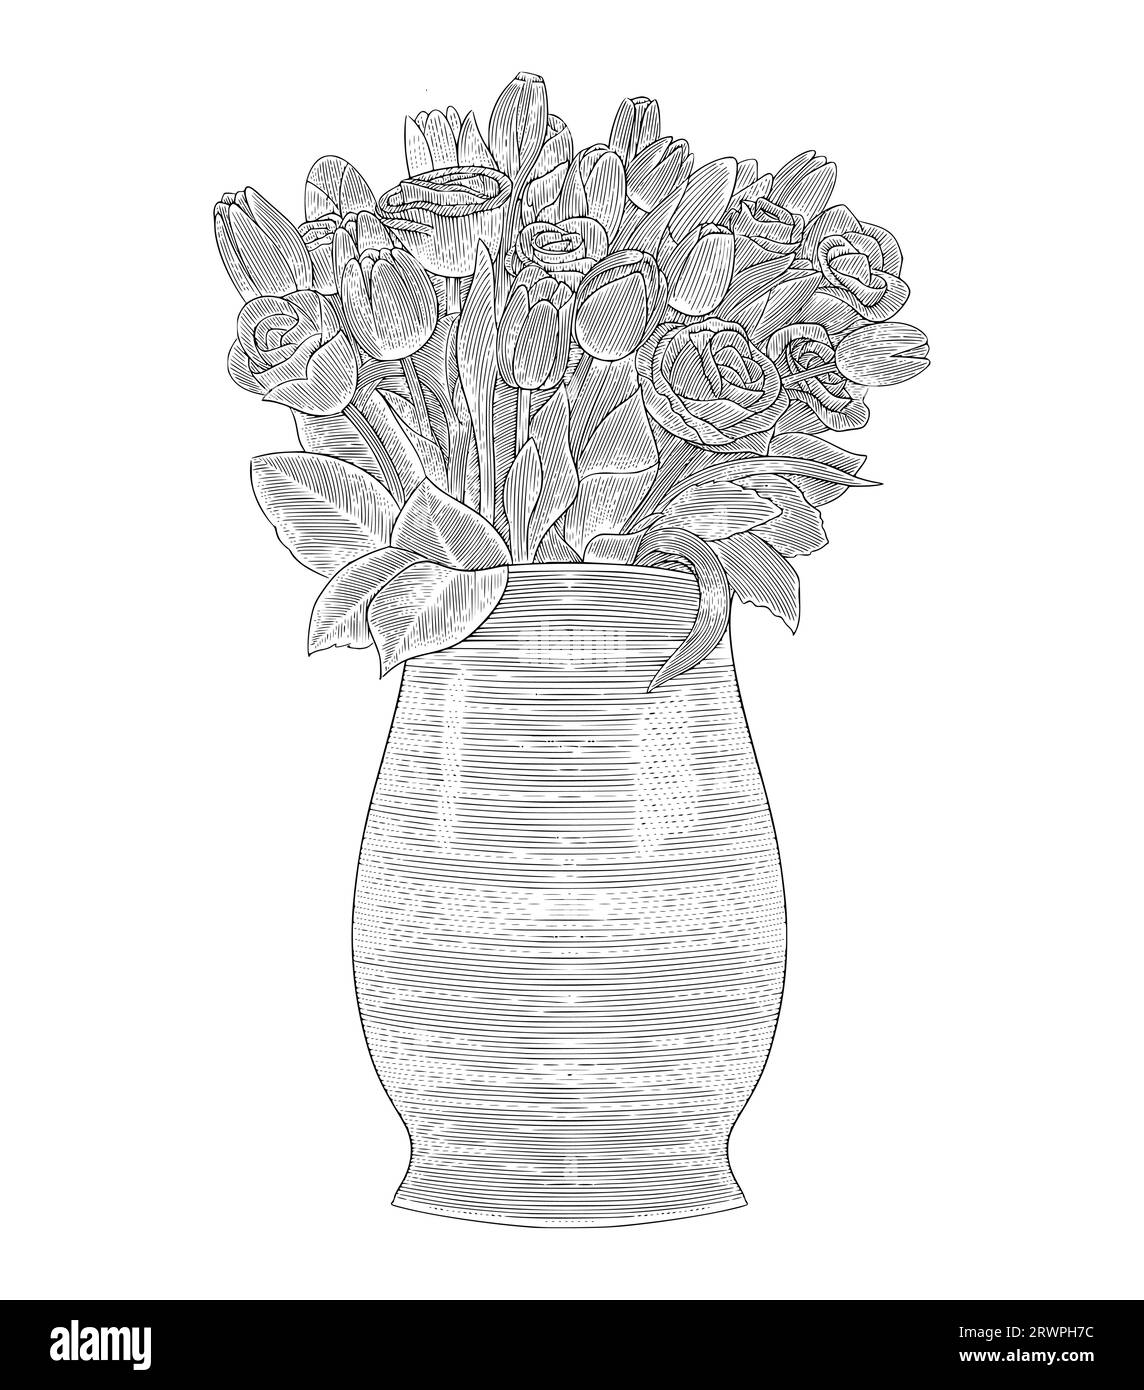 Fleurs de tulipe dans un vase, gravure vintage illustration vectorielle de style dessin Illustration de Vecteur